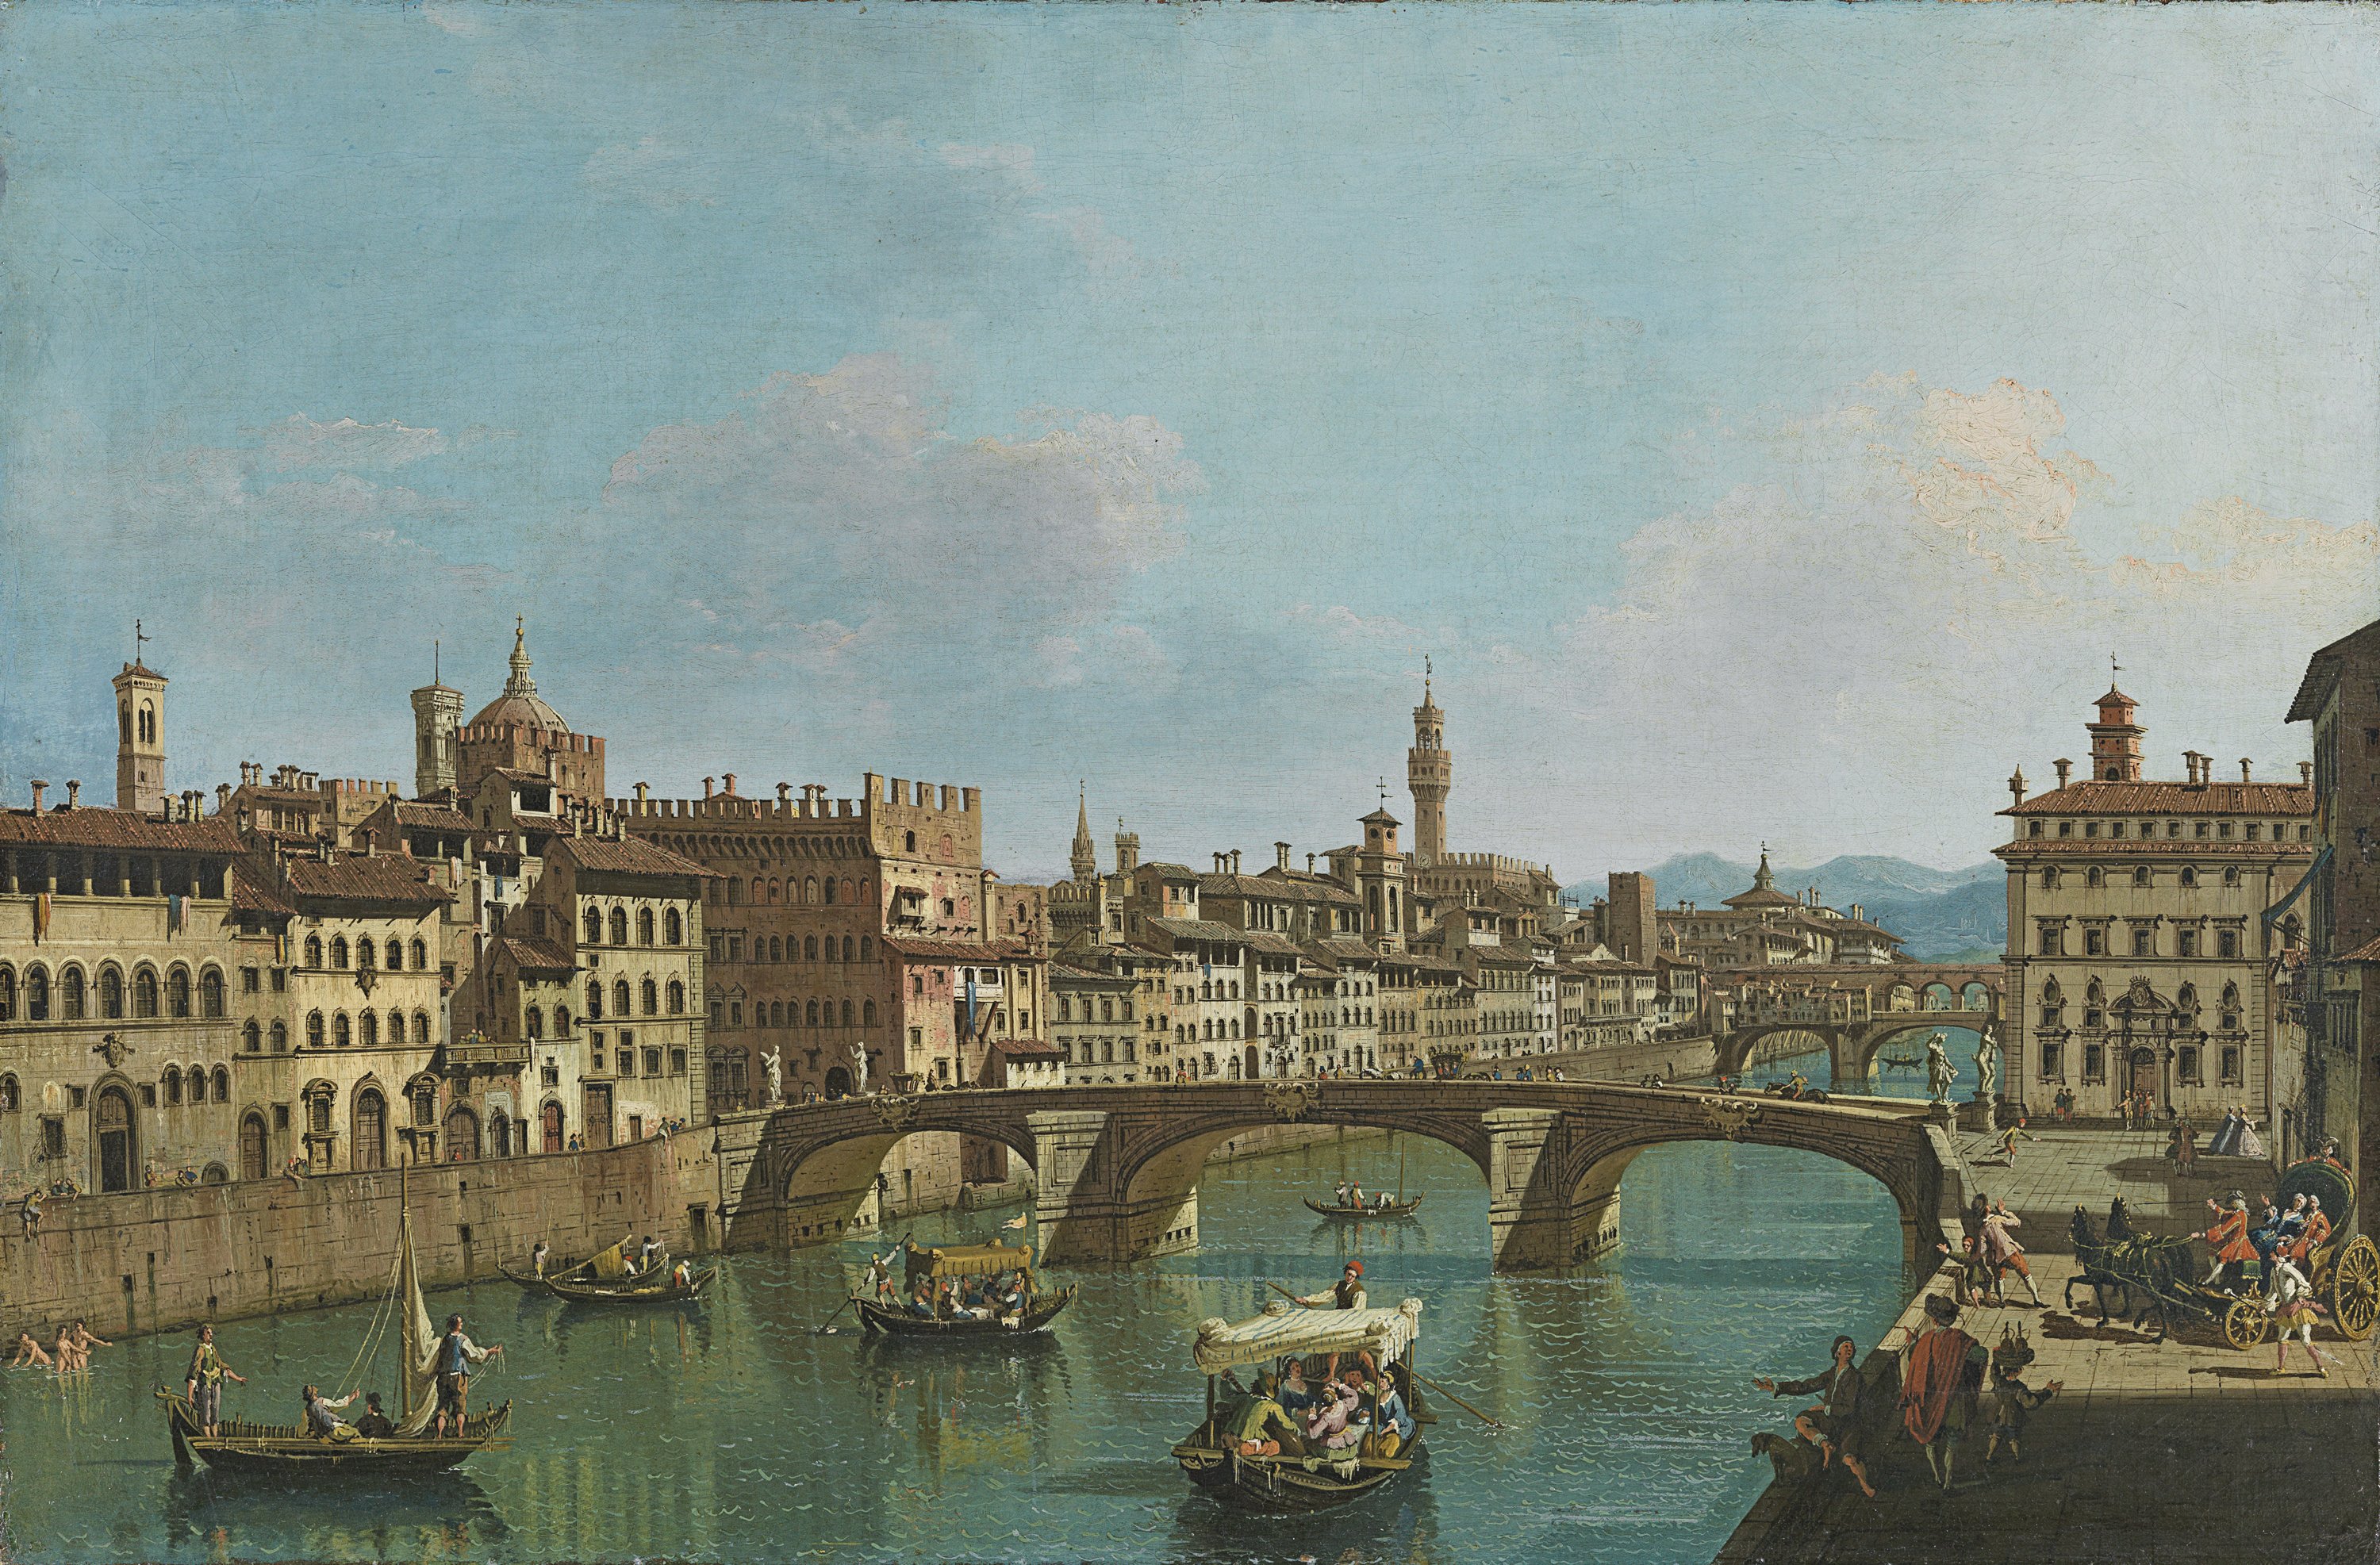 The Arno River at the Santa Trinita Bridge. El Arno en el puente Santa Trinita, c. 1741